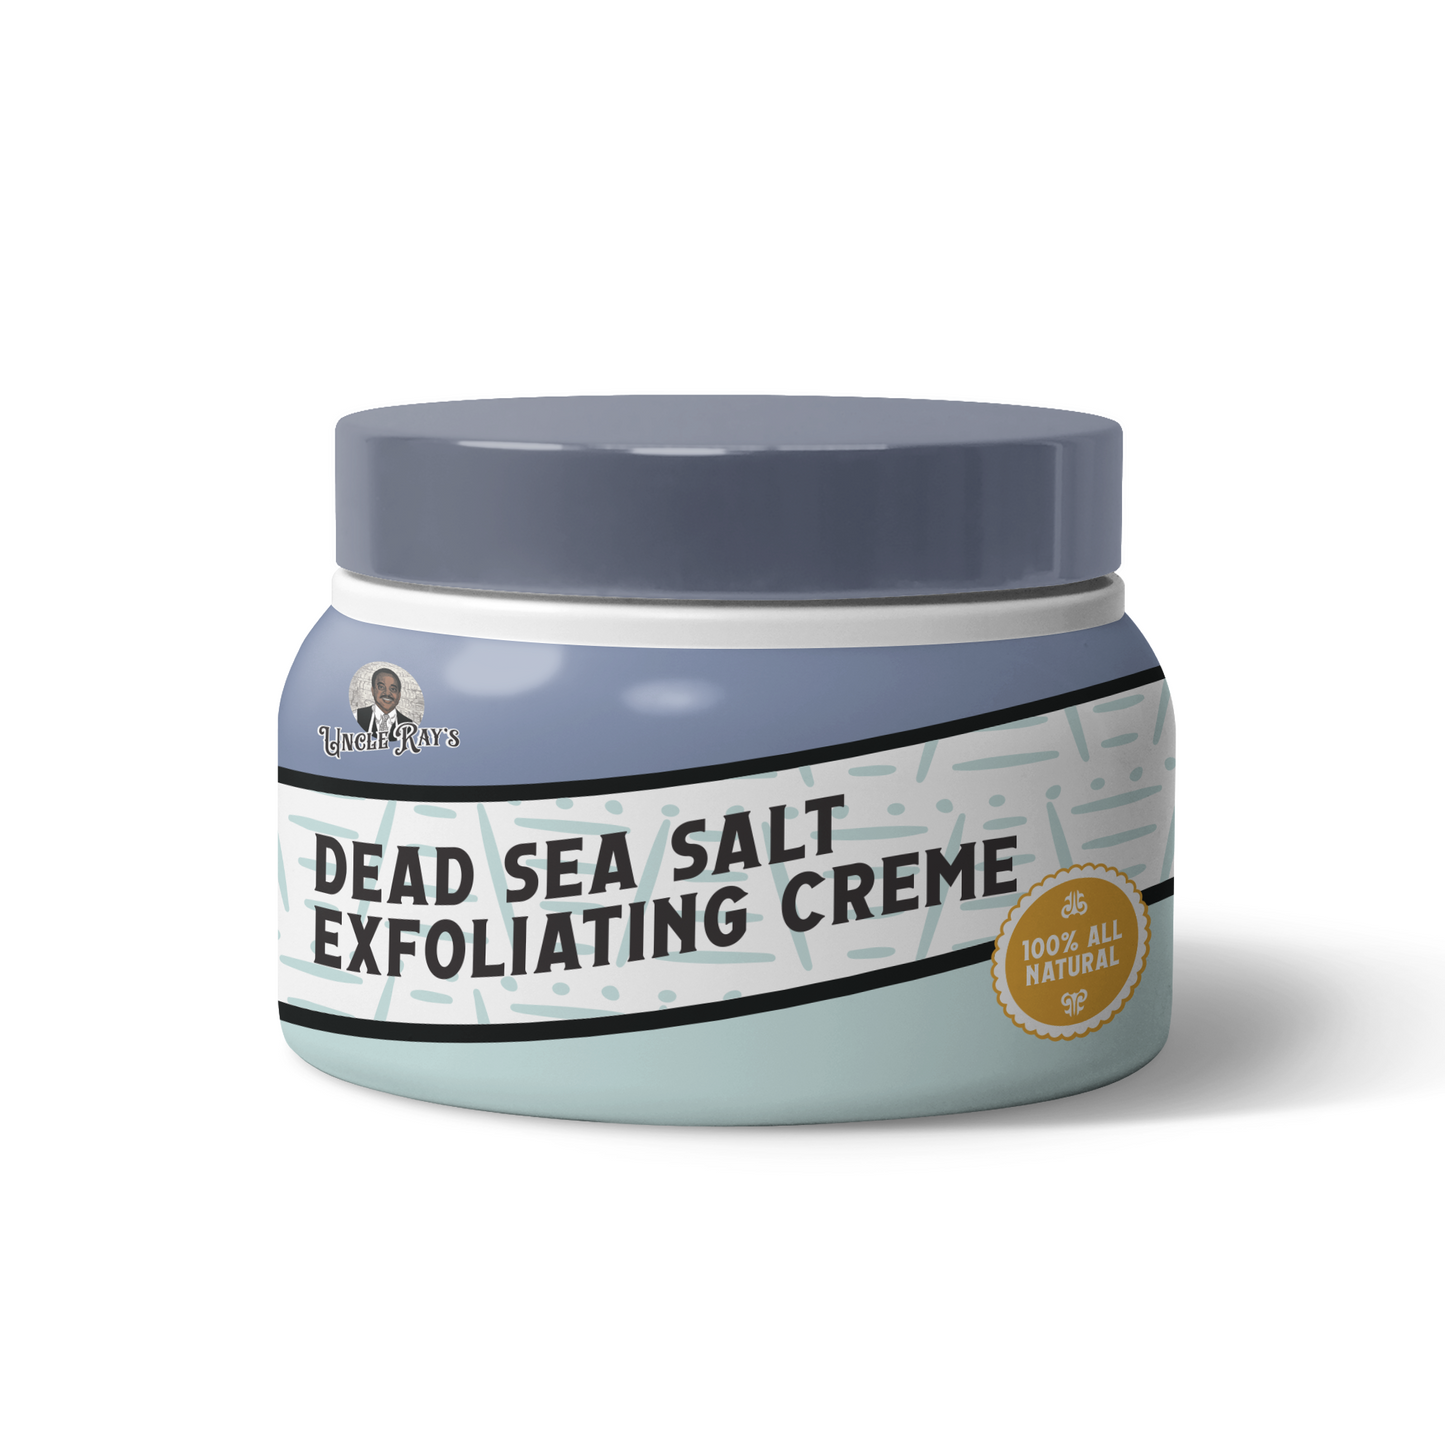 Dead Sea Salt Exfoliating Creme